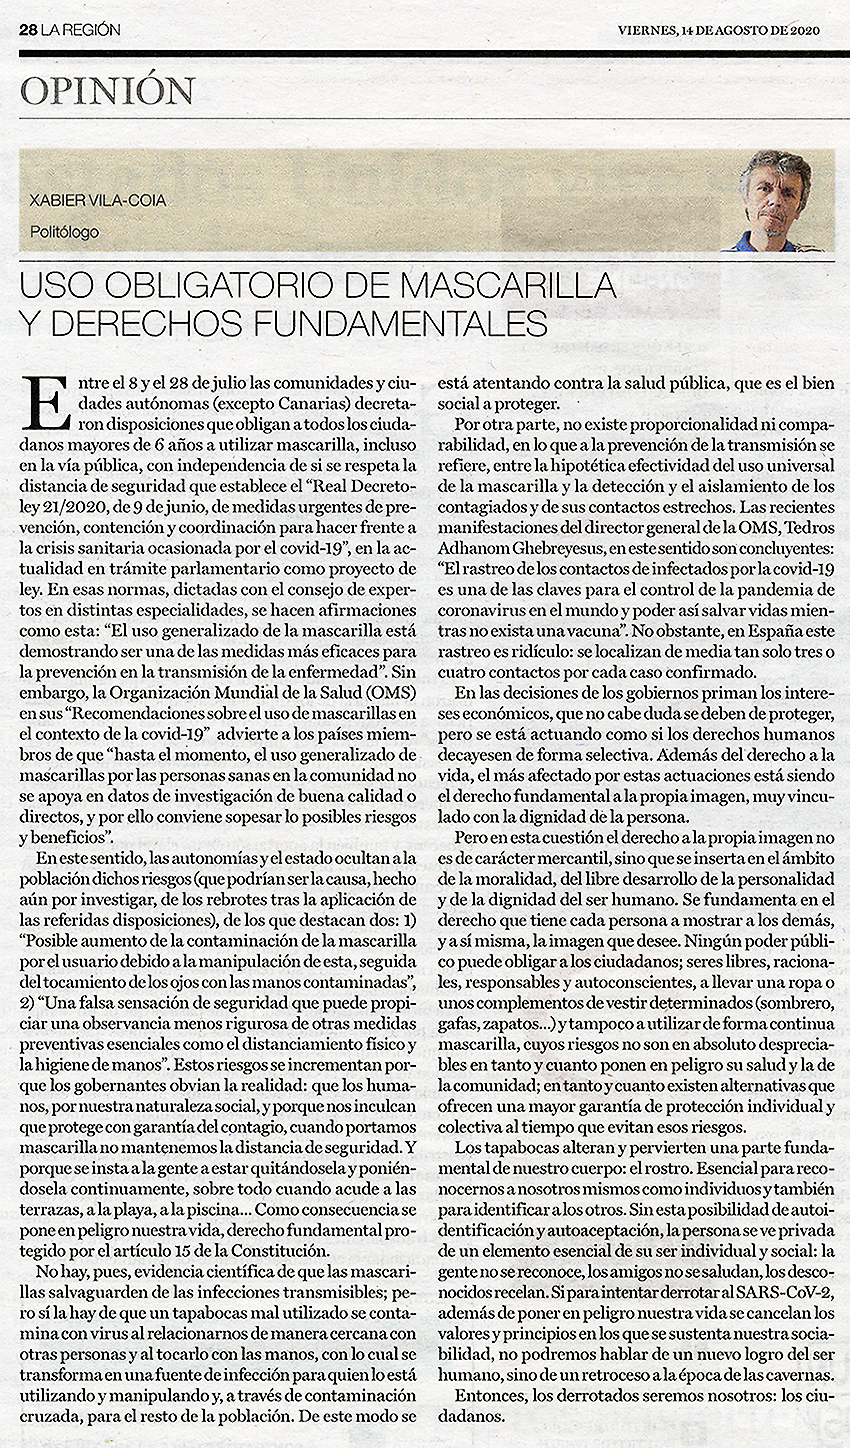 Artículo de Xabier Vila-Coia titulado "Uso obligatorio de mascarilla y derechos fundamentales", publicado en el diario La Región del 14 de agosto de 2020, y en El Correo Gallego el día 23.